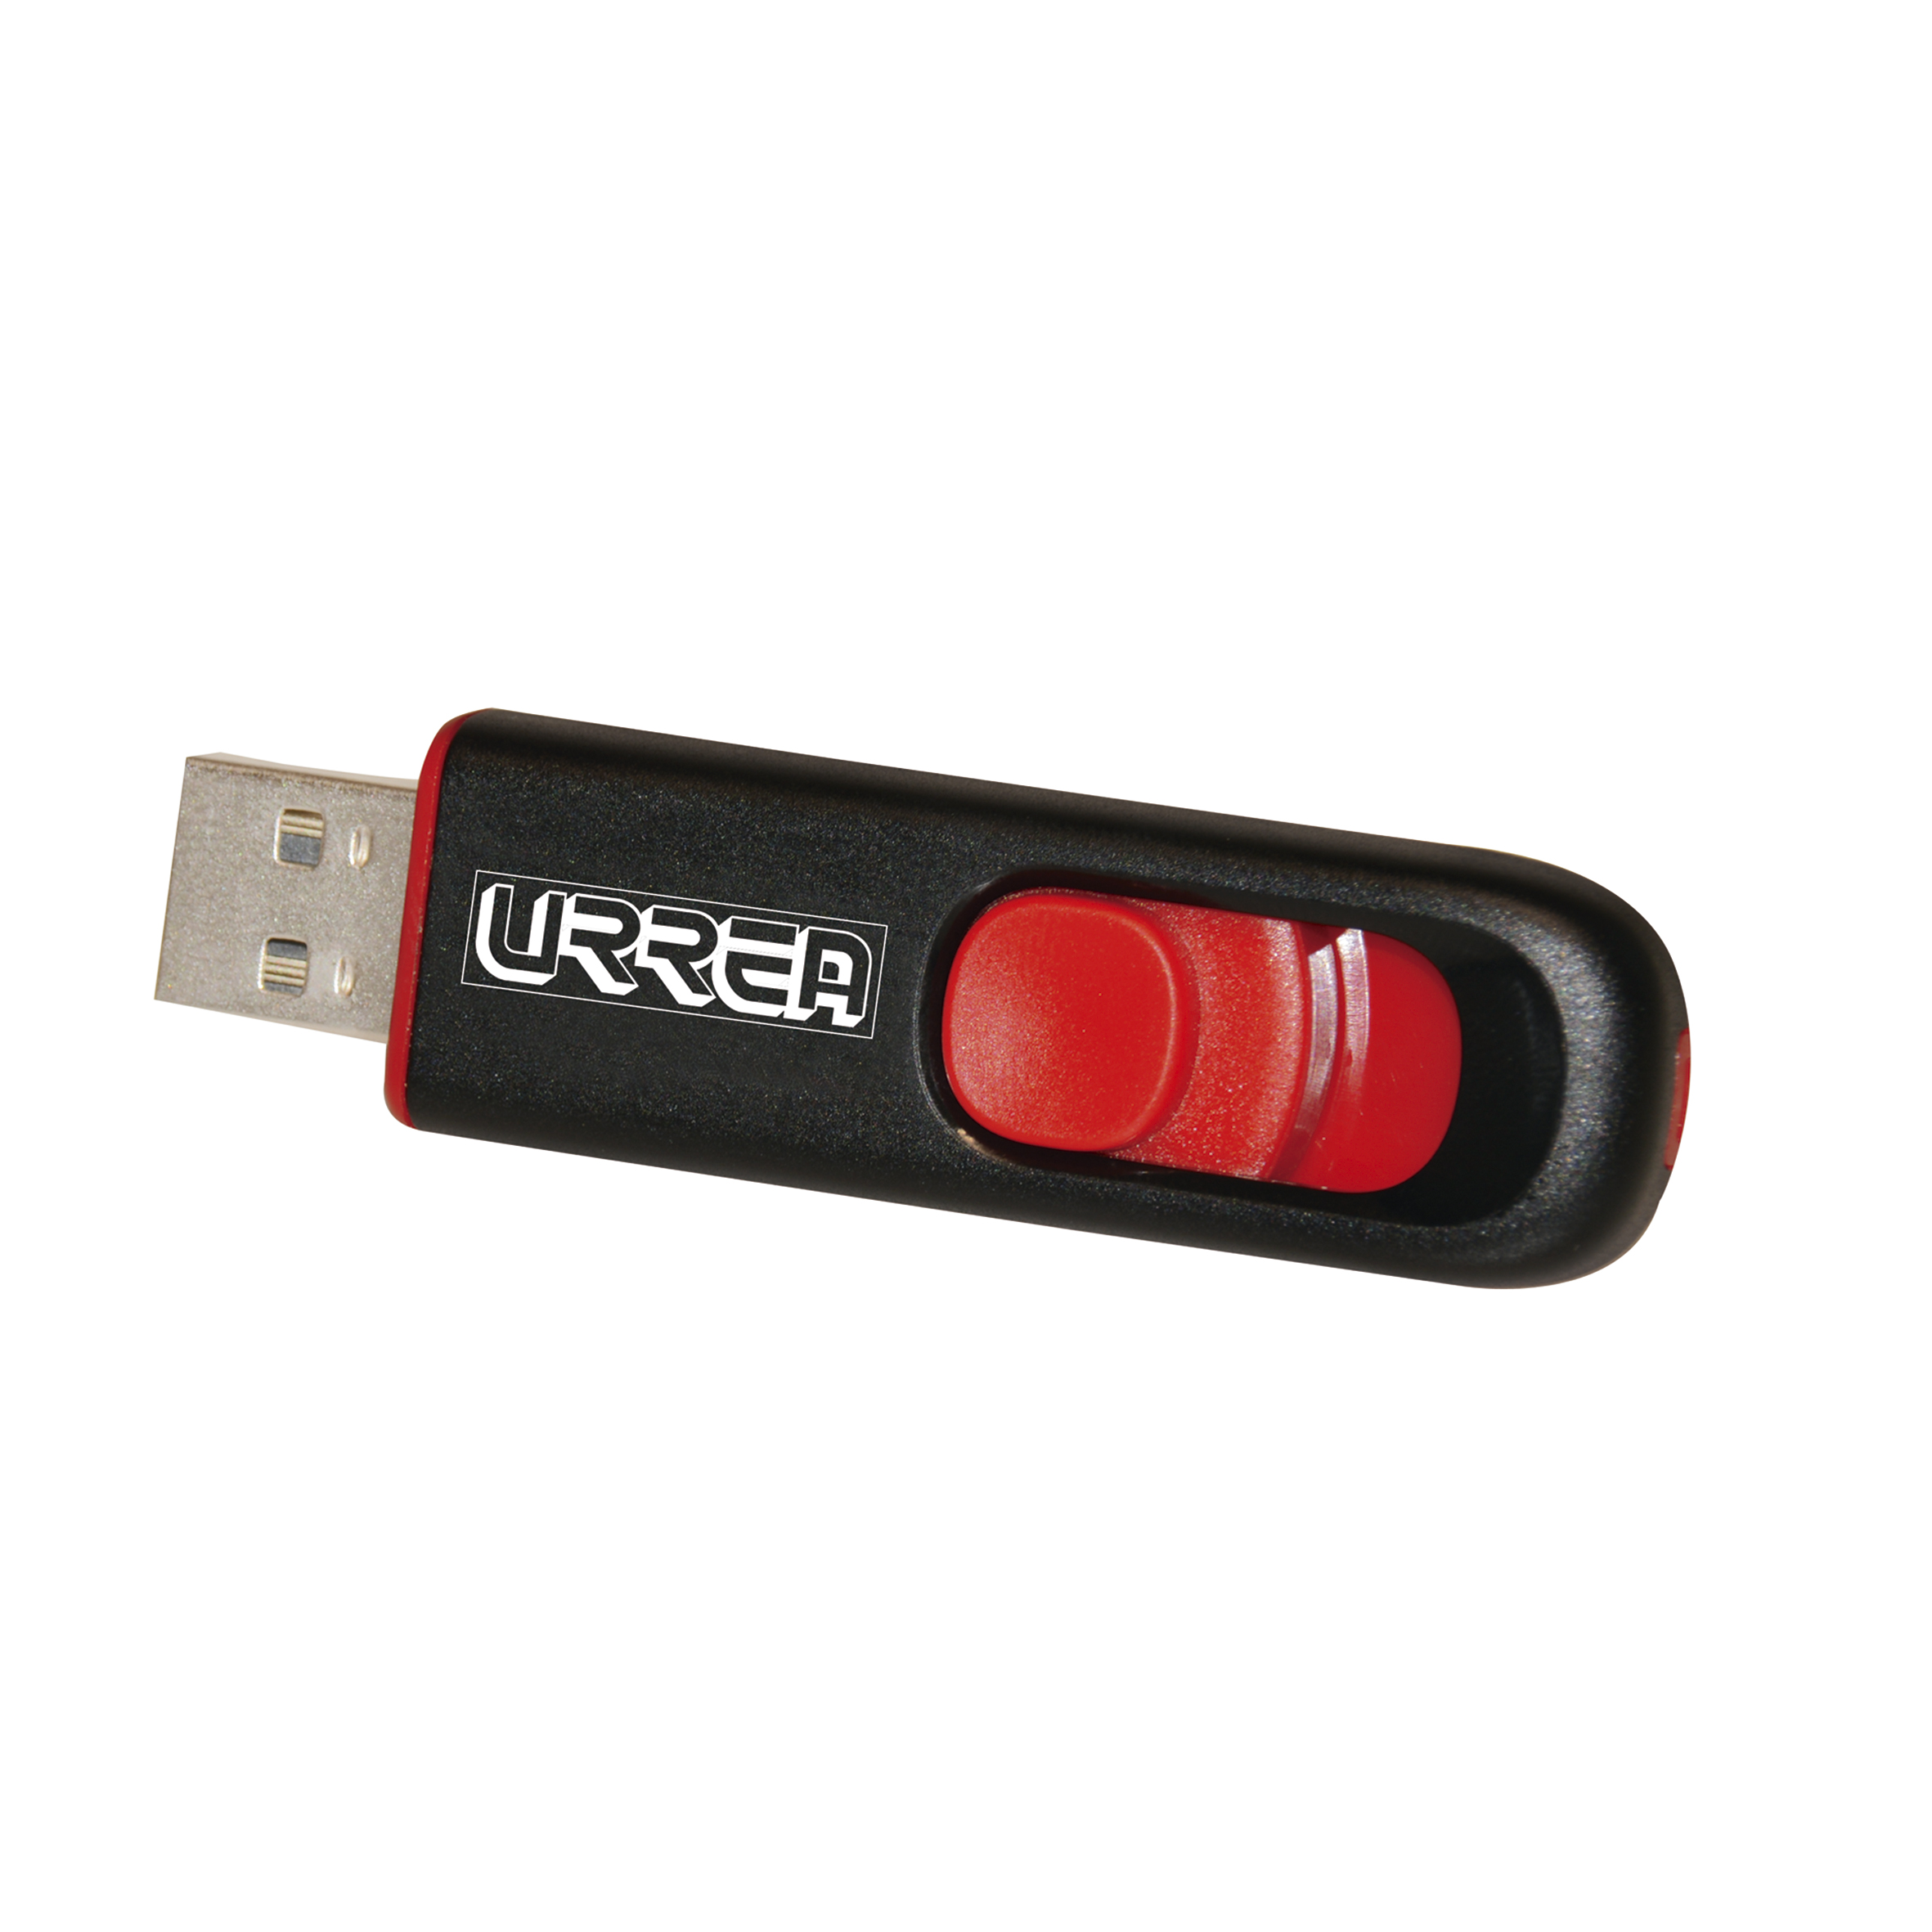 Memoria USB retráctil 8GB